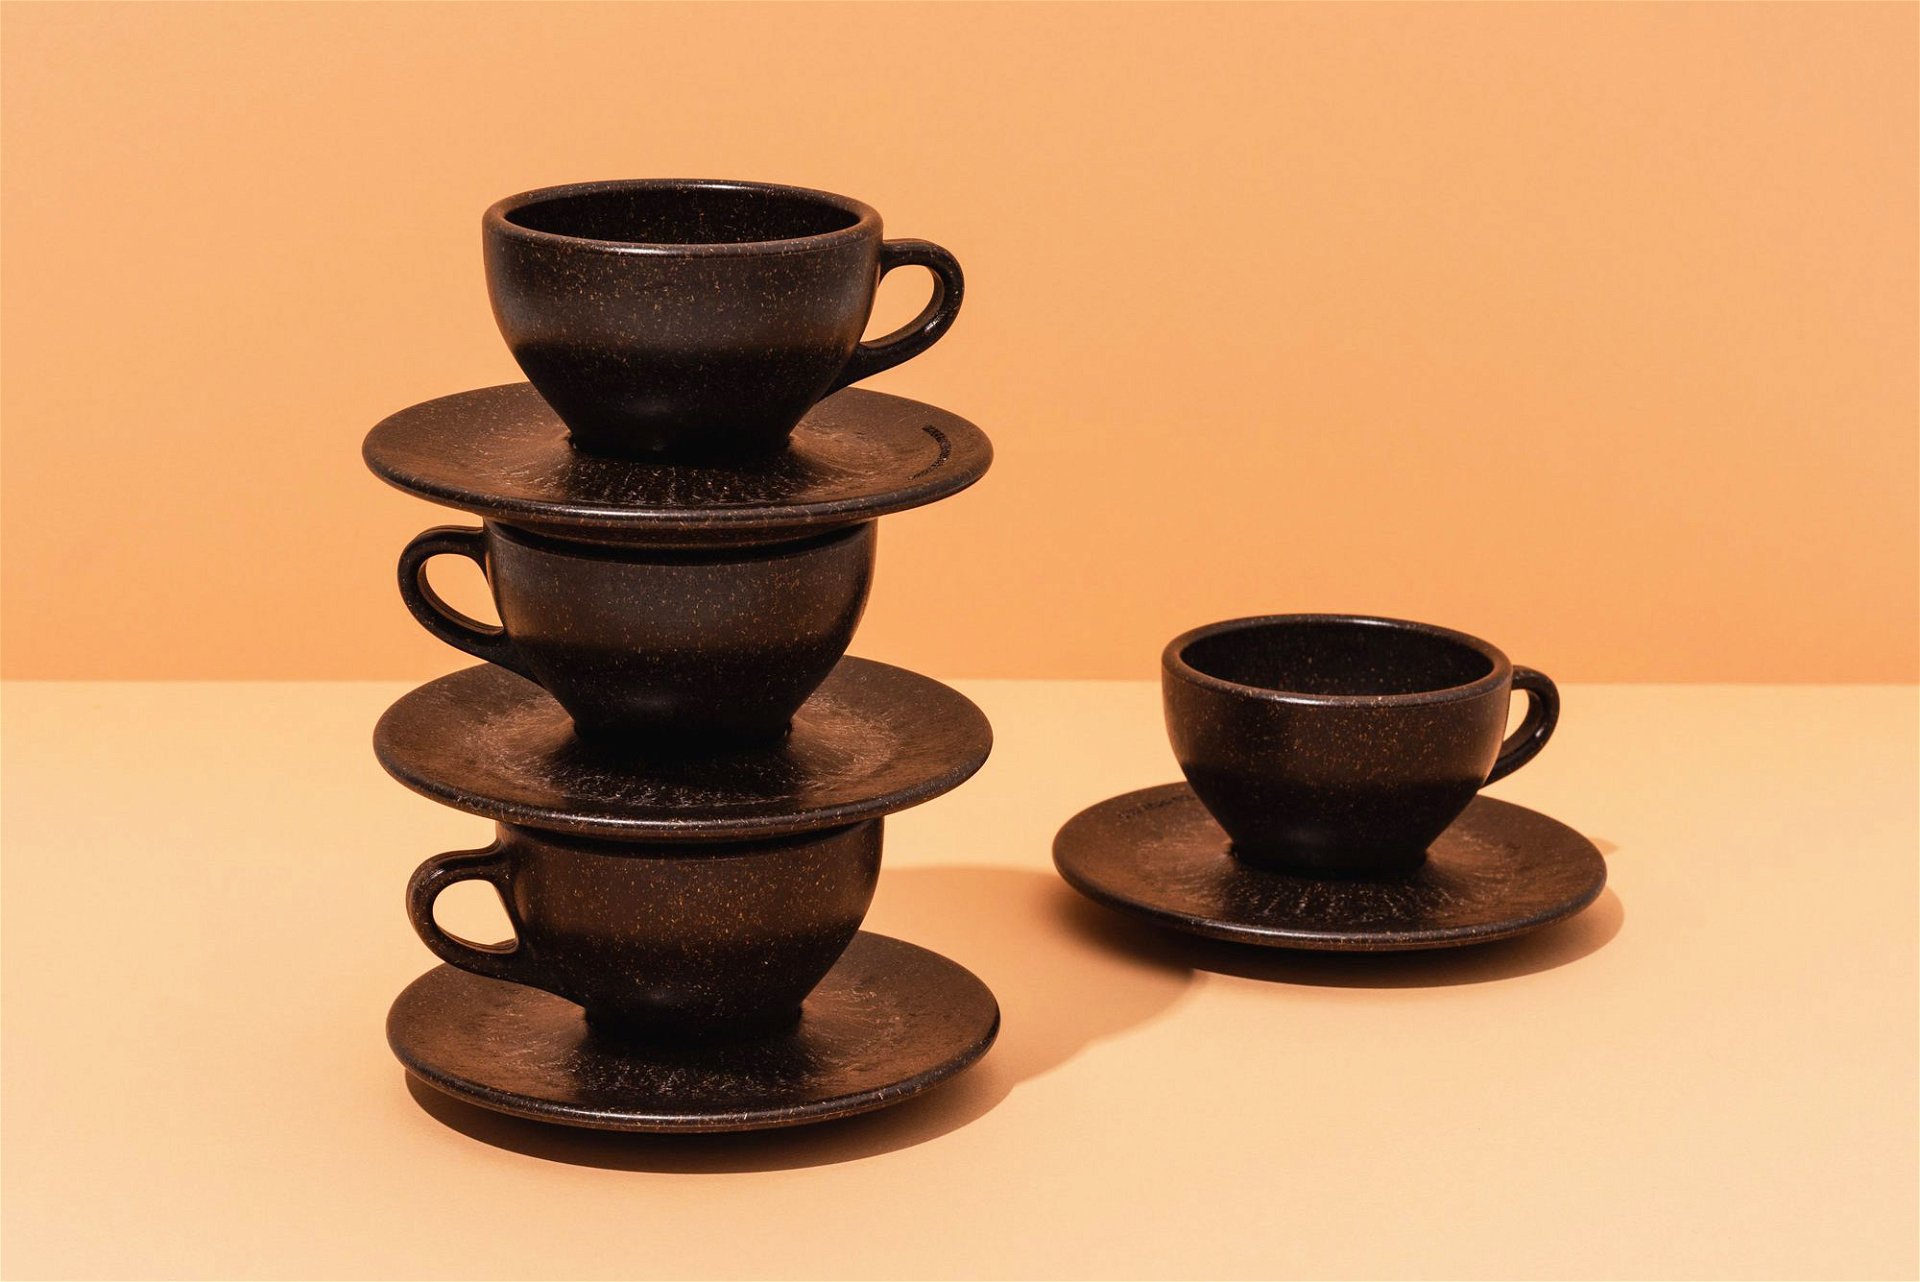 Doppelter Espresso: Diese Kaffeetassen-Serie wurde – das ist der Clou – aus altem Kaffeesatz gemacht. kaffeeform.com